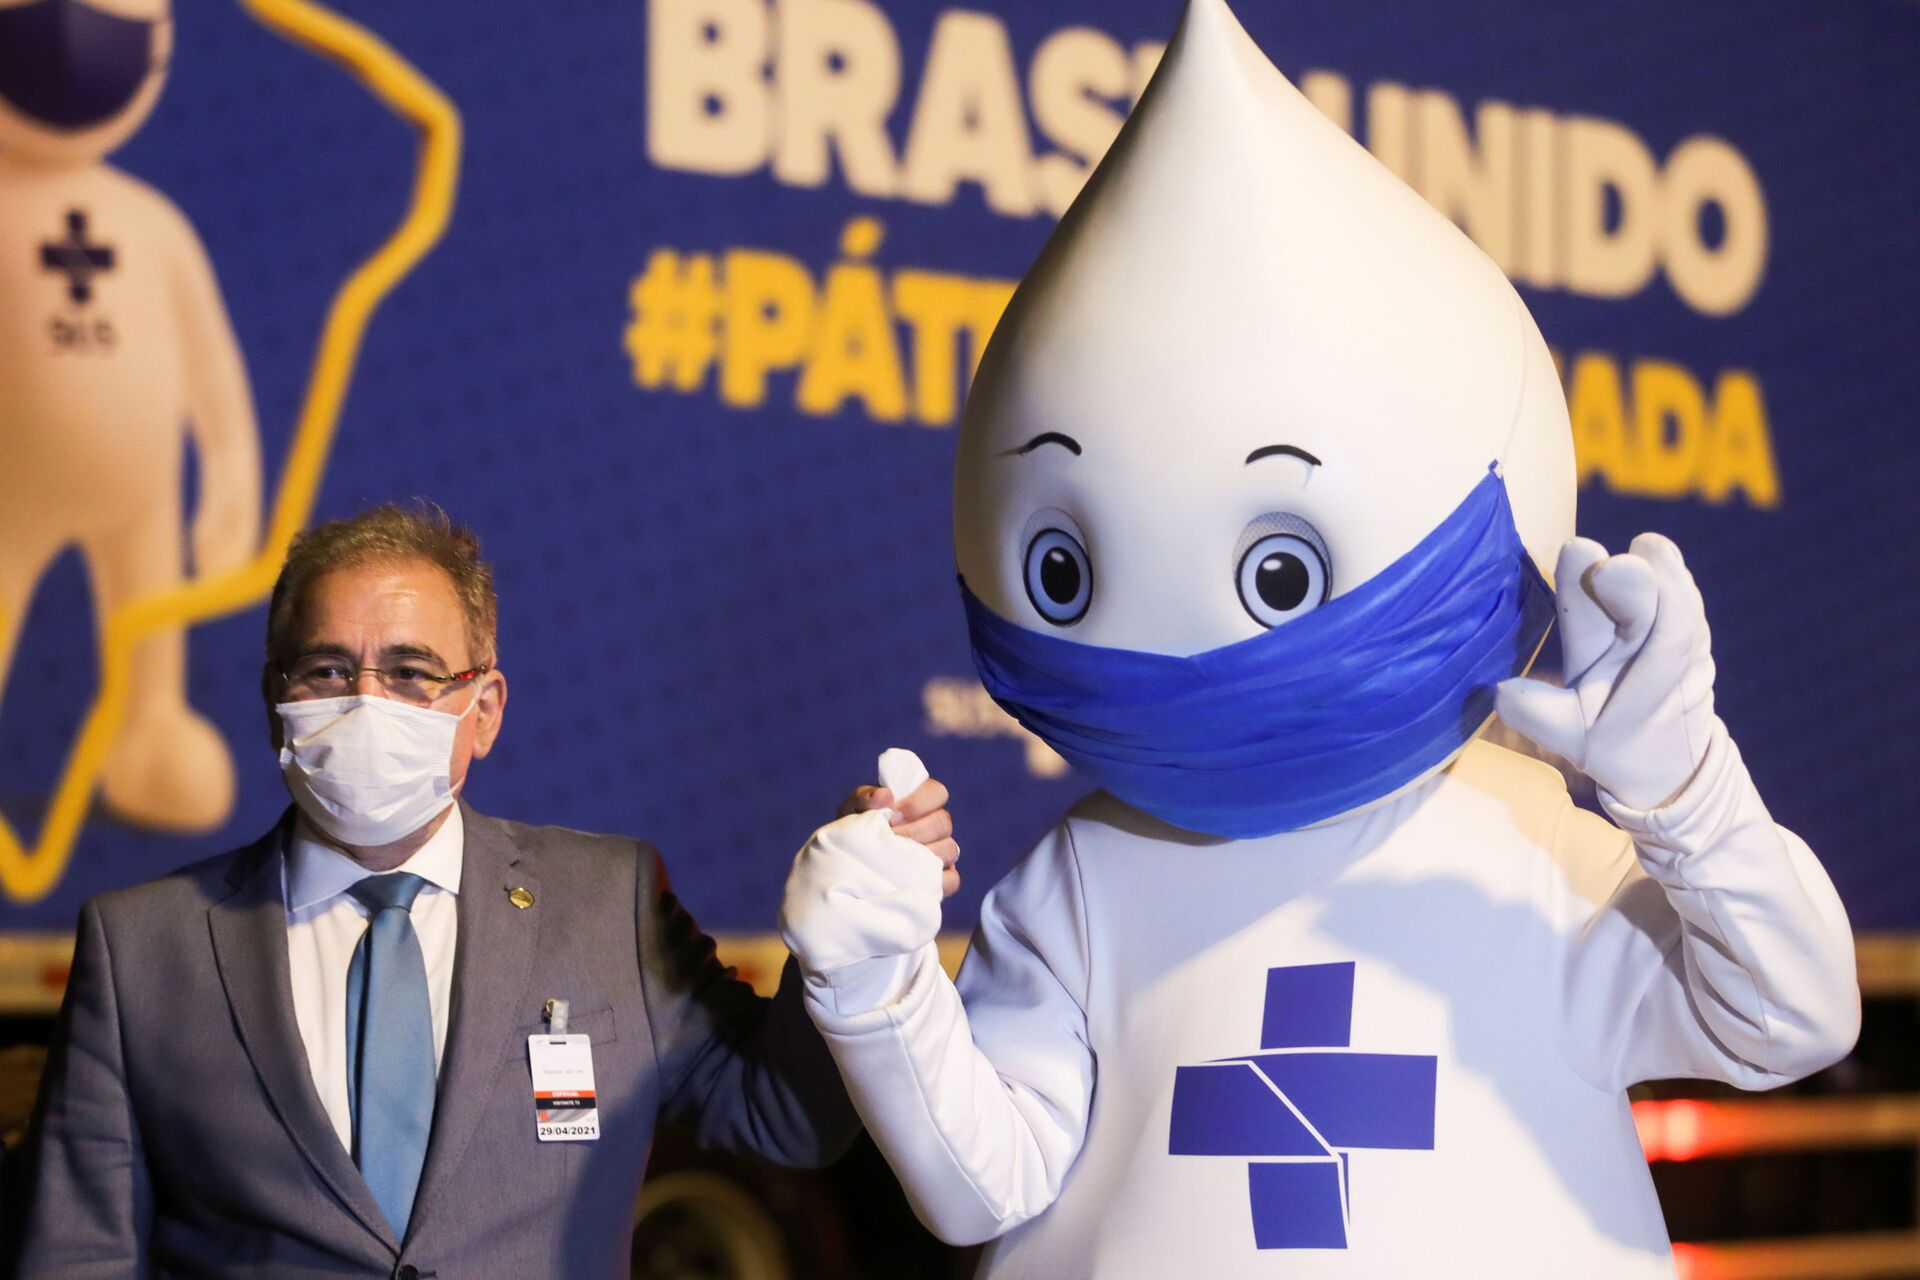 'Vamos imunizar toda a população até o fim do ano', diz ministro da Saúde, Marcelo Queiroga - Sputnik Brasil, 1920, 31.05.2021